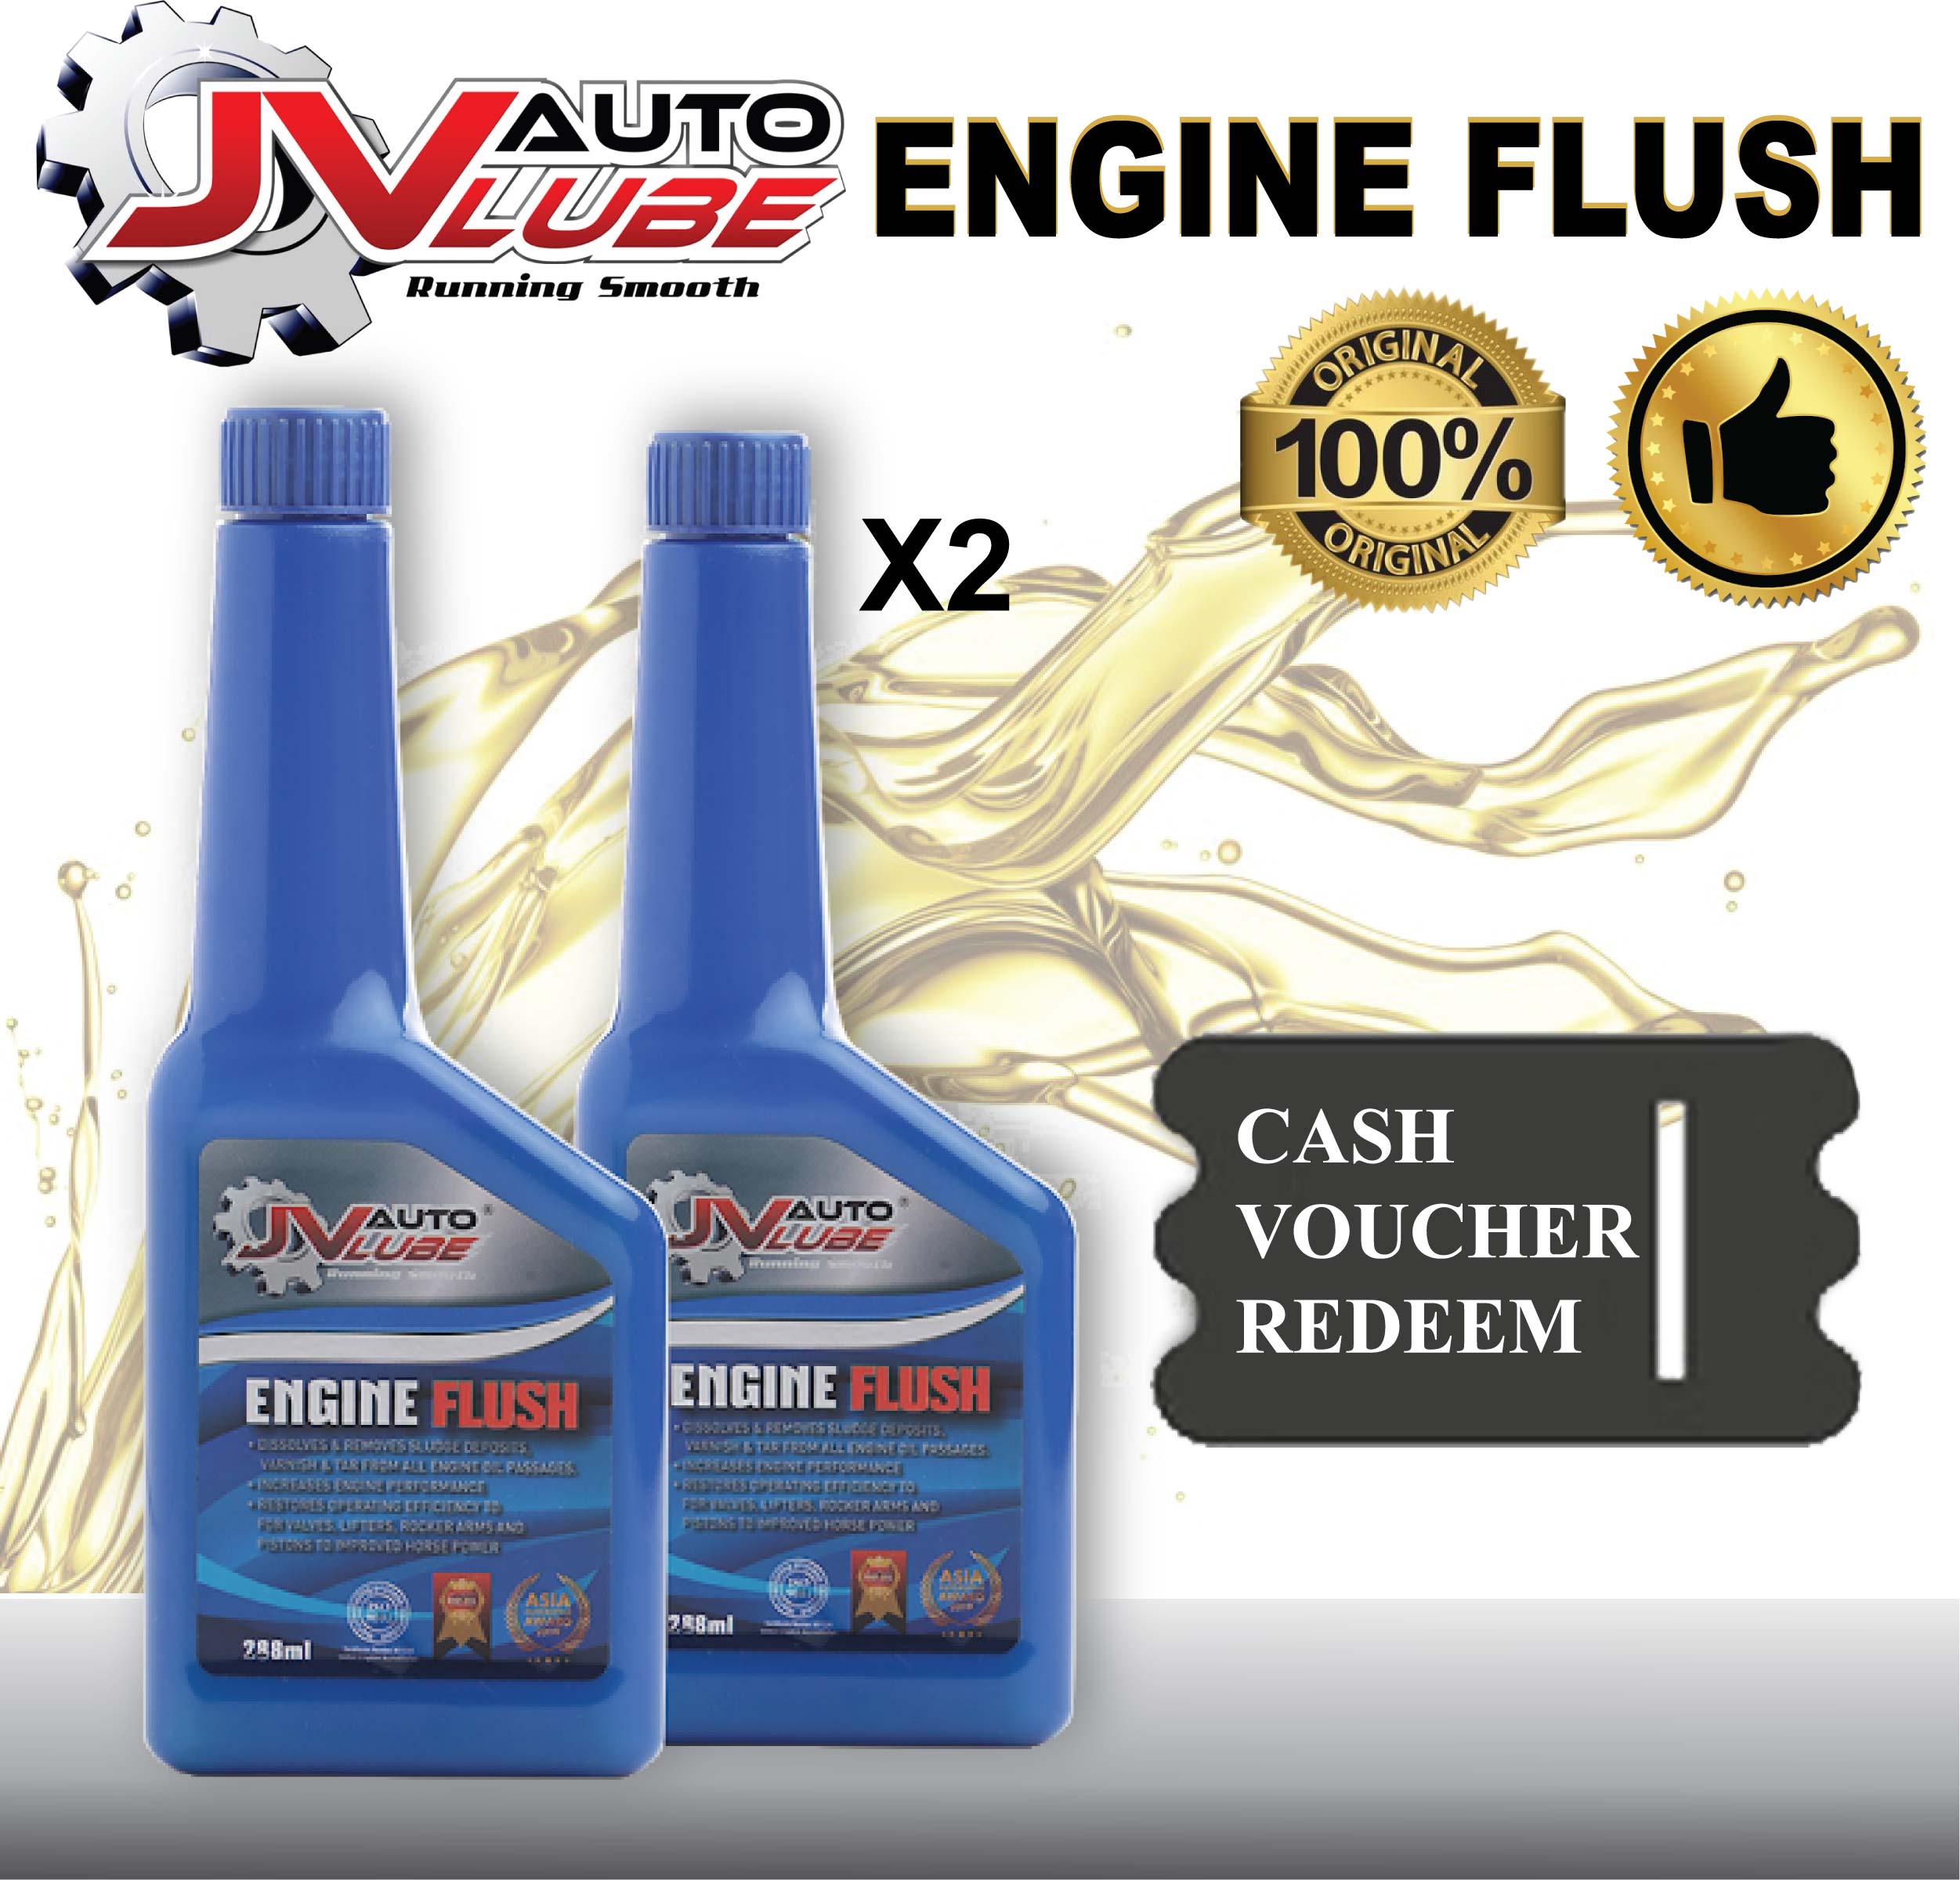 ( Cash Voucher Redeem ) 2 Bottle JV Auto Lube - Engine Flush Original 288ml